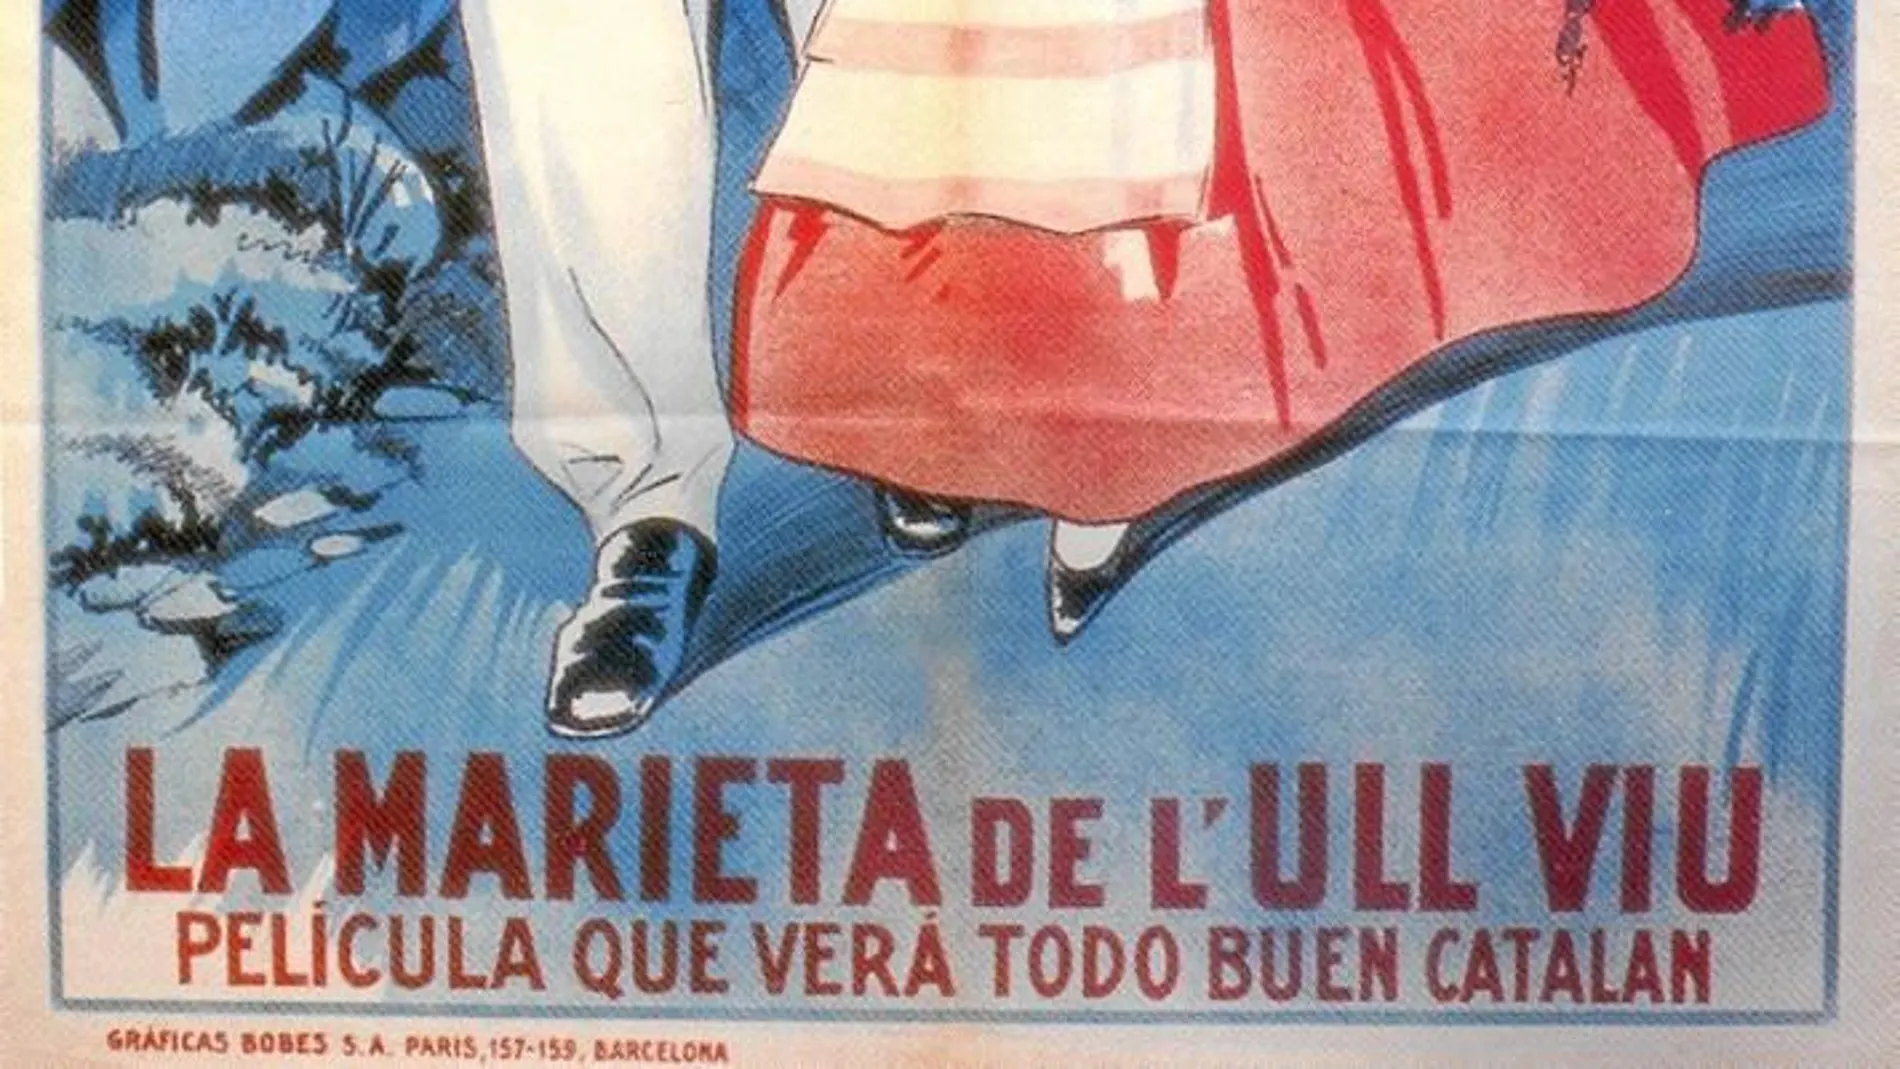 El cartel para la película «La Marieta de l'ull viu», una producción catalana de 1927